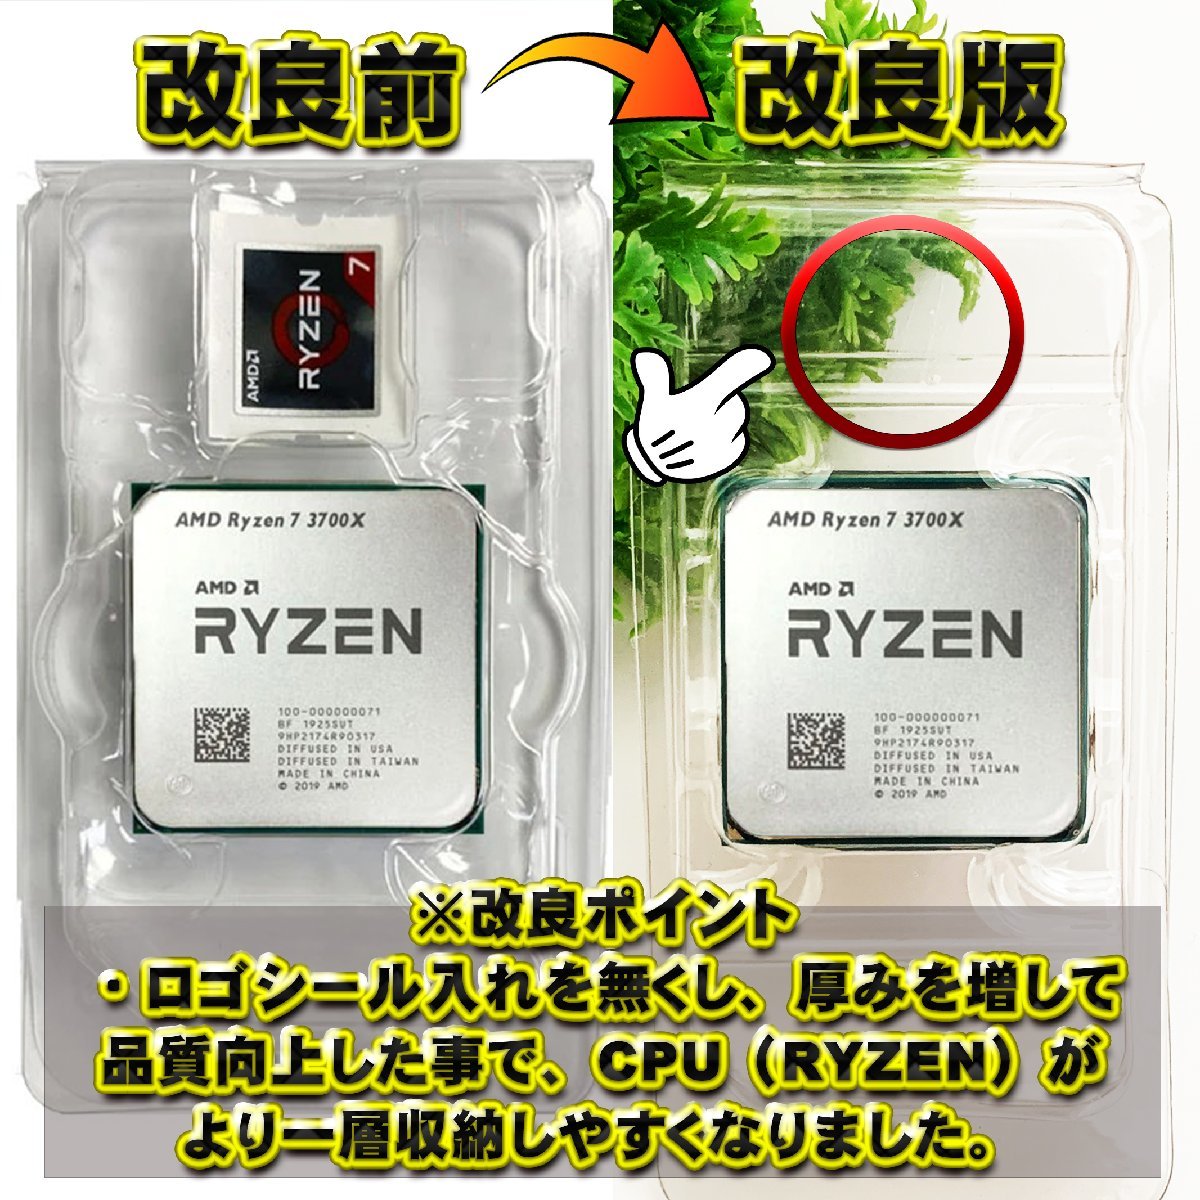 【改良版】【 AM1 対応 】CPU シェルケース AMD用 プラスチック【AM4のRYZENにも対応】 保管 収納ケース 1枚_画像4